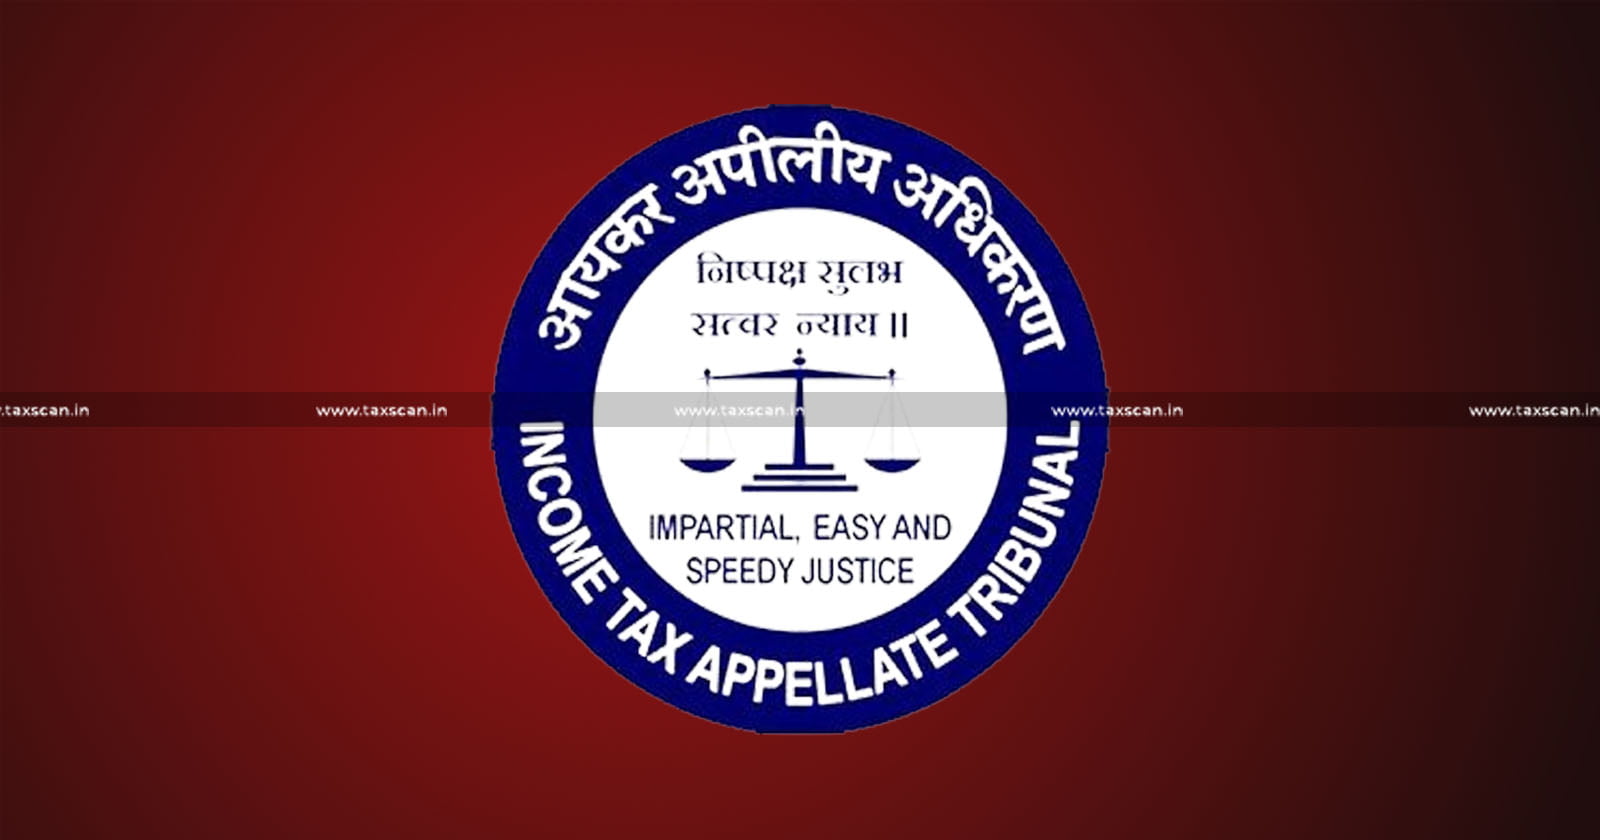 ITAT Delhi - ITAT - Assessment Order - Dispute Resolution Panel - DRP - Dispute Resolution Panel guidelines - Taxscan